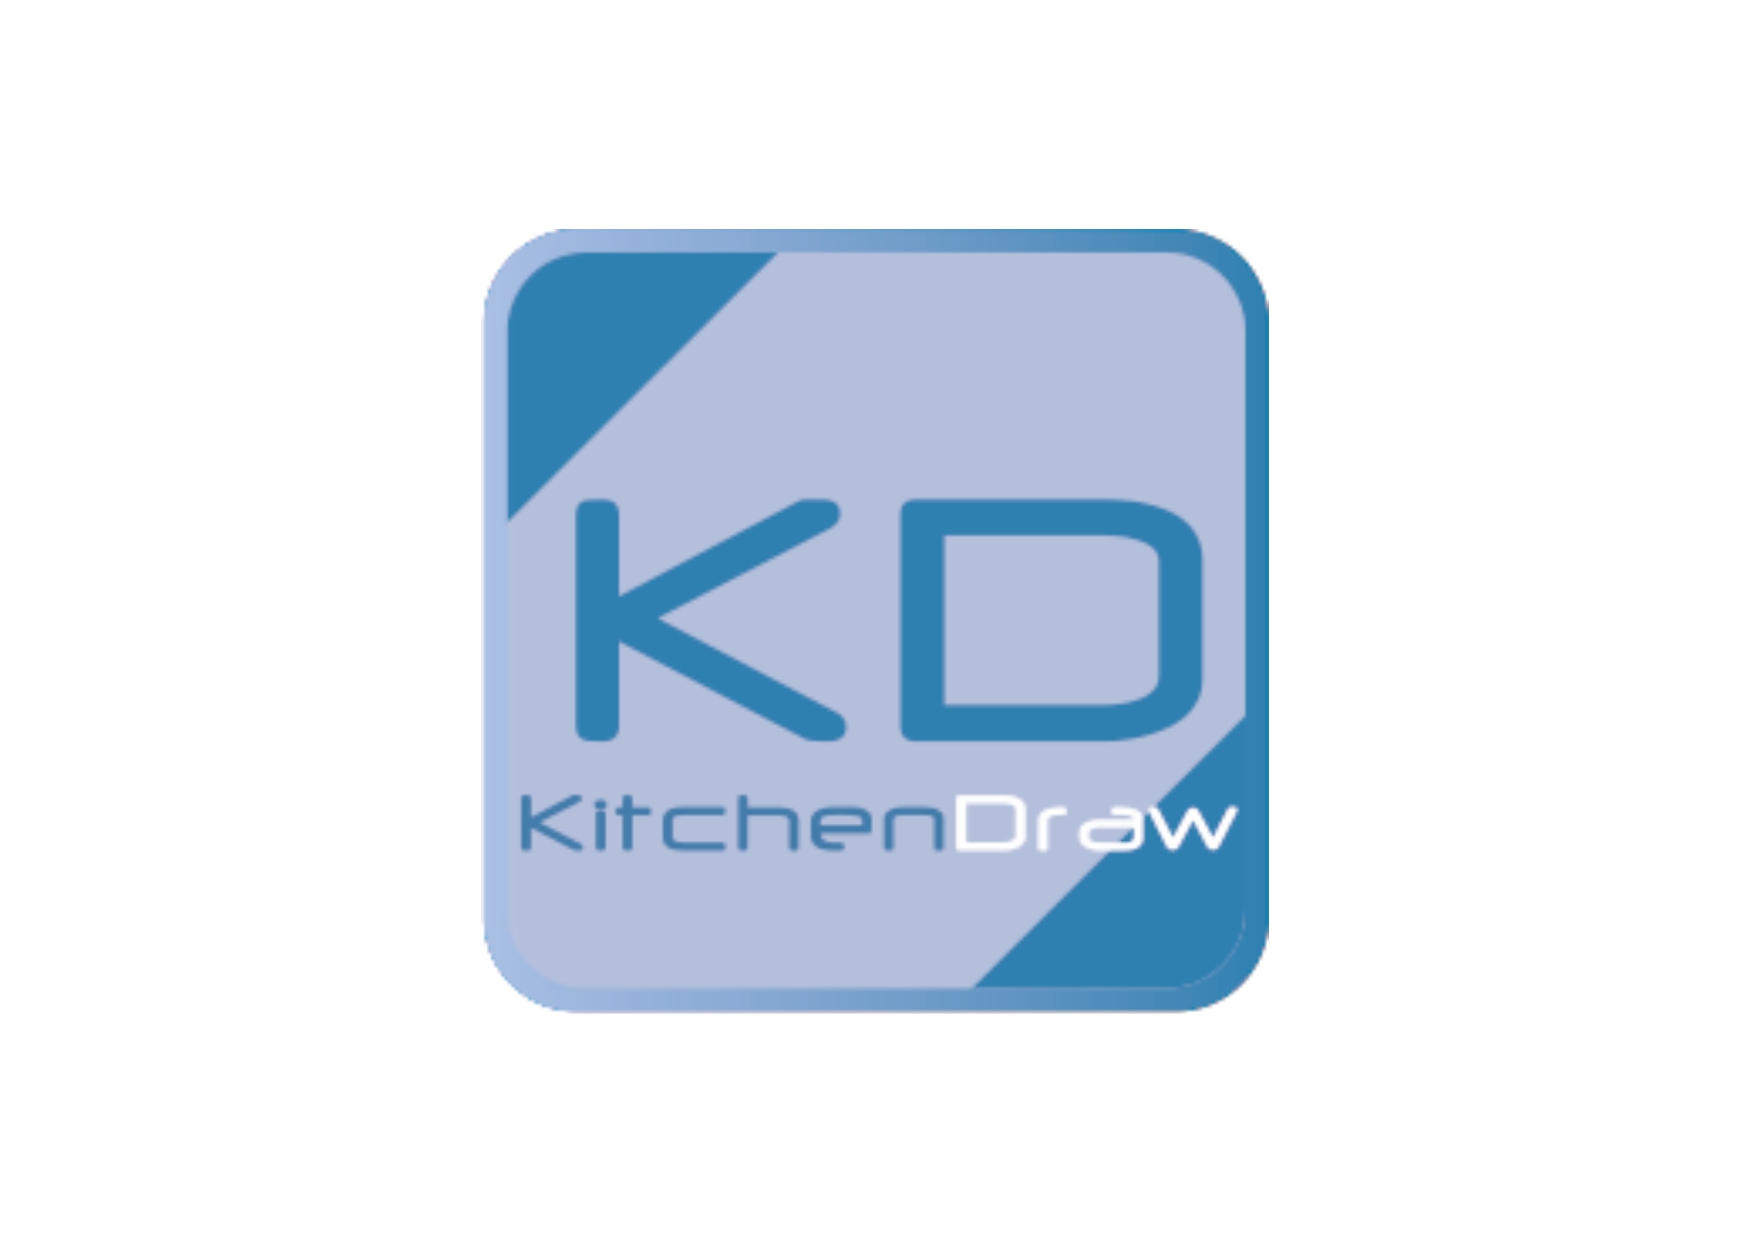 KitchenDraw